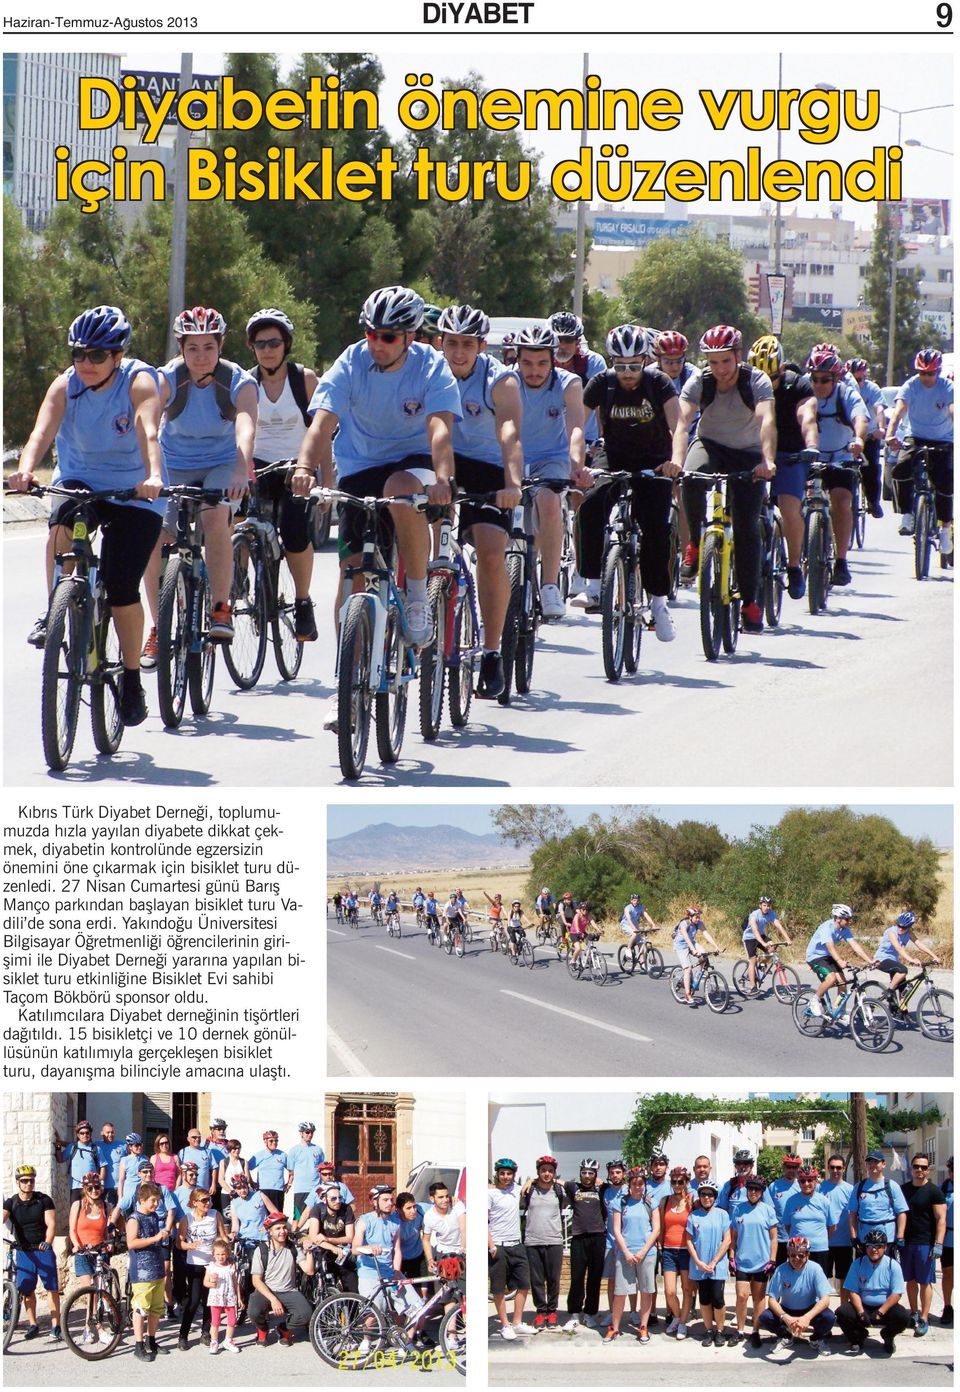 Yakındoğu Üniversitesi Bilgisayar Öğretmenliği öğrencilerinin girişimi ile Diyabet Derneği yararına yapılan bisiklet turu etkinliğine Bisiklet Evi sahibi Taçom